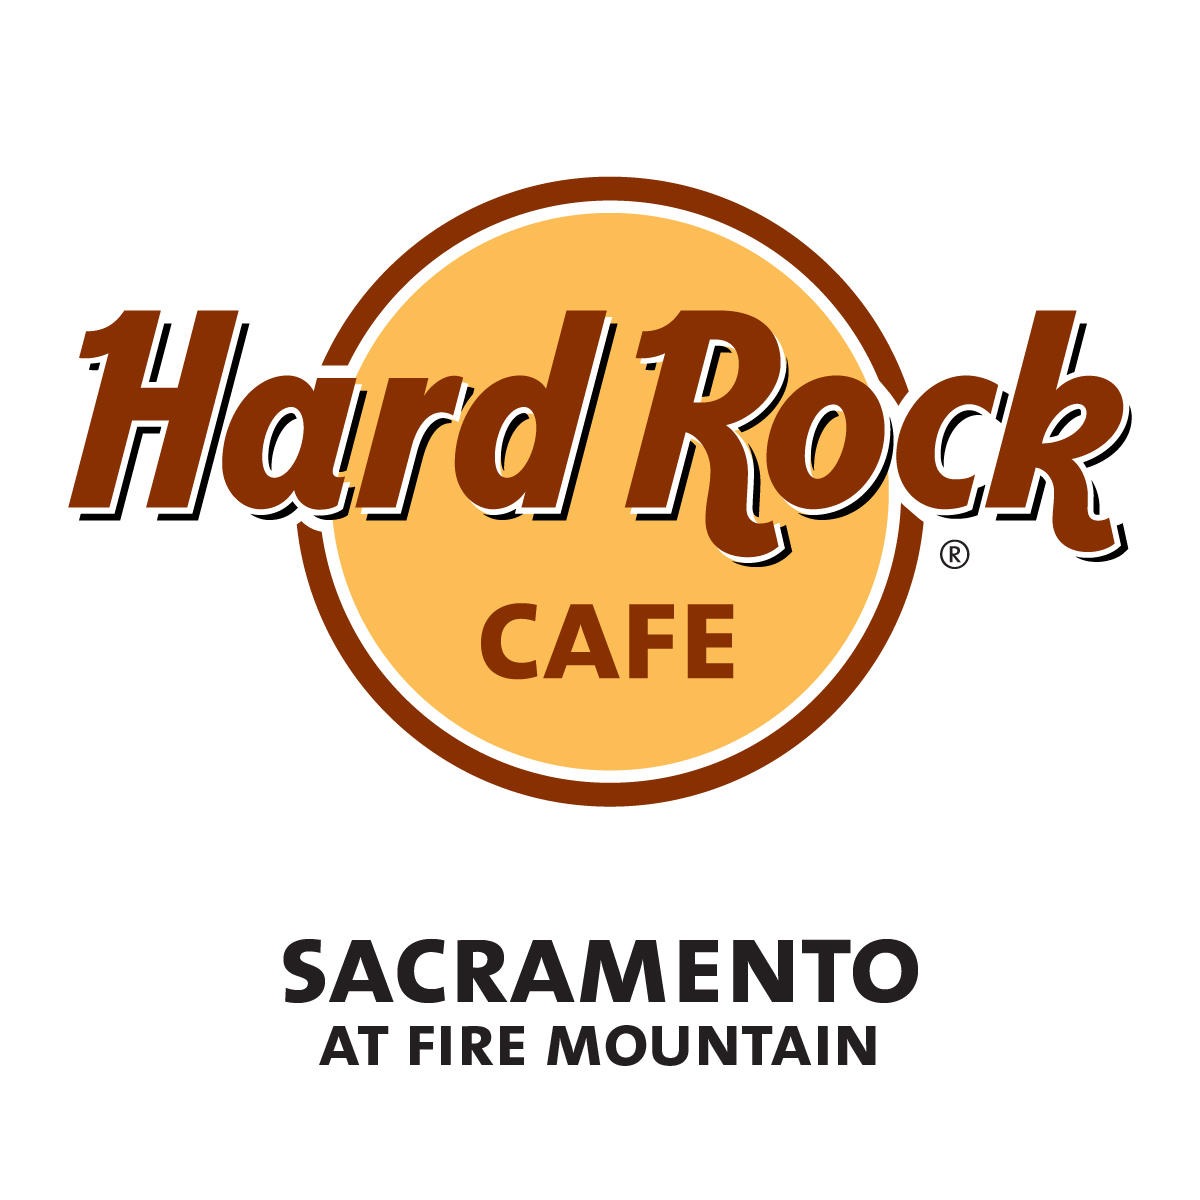 Hard Rock Cafe Sacramento